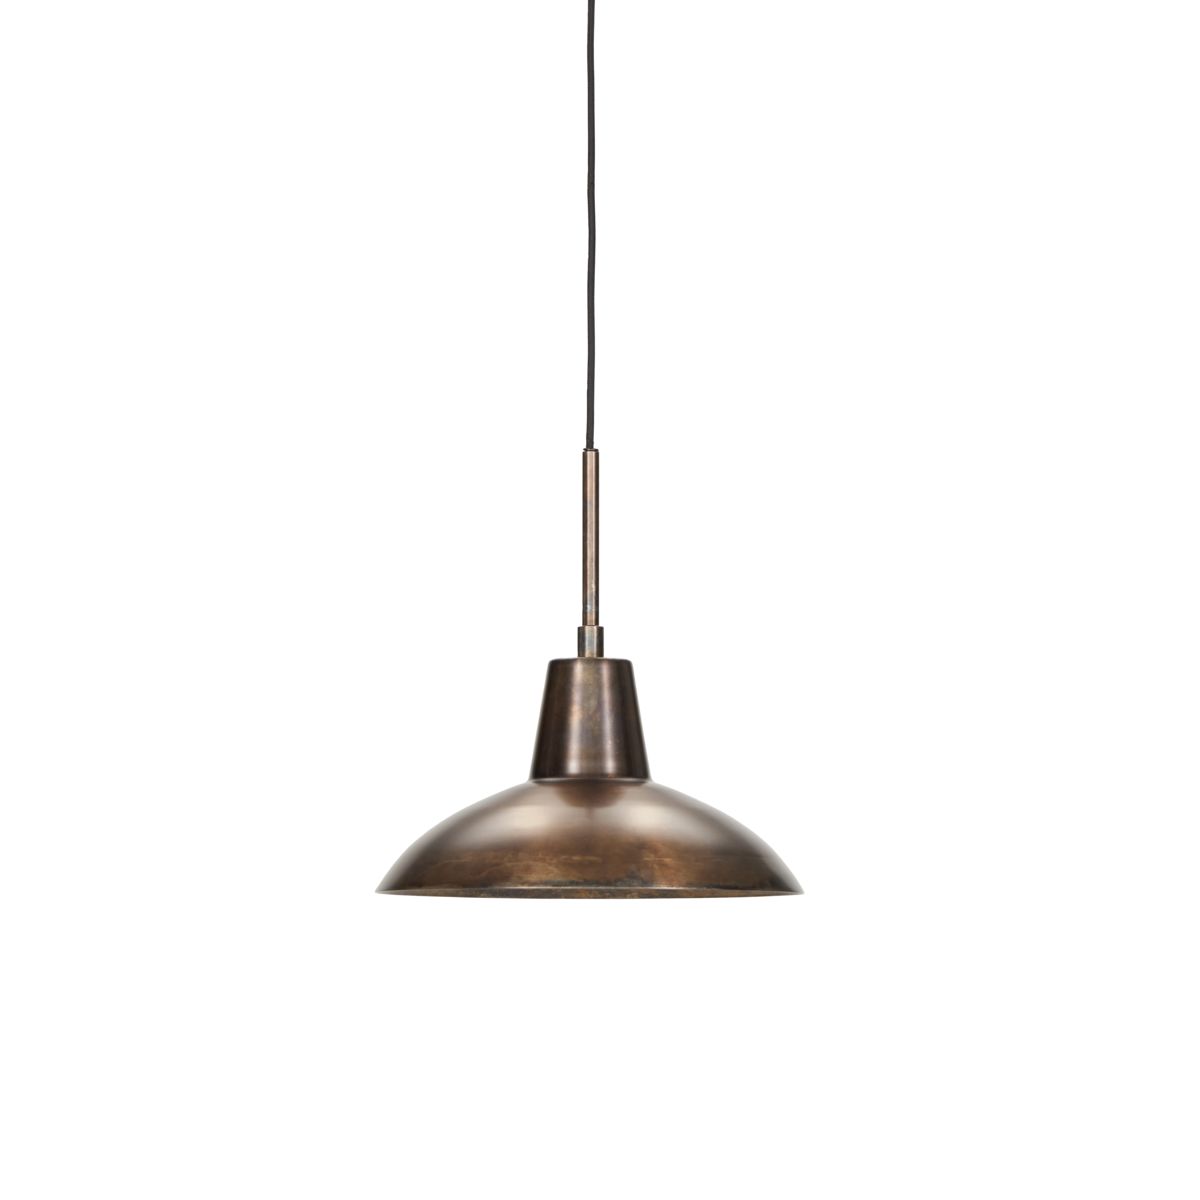 Billede af Lampe, HDDesk, Antik brun hos ModernHouse.dk